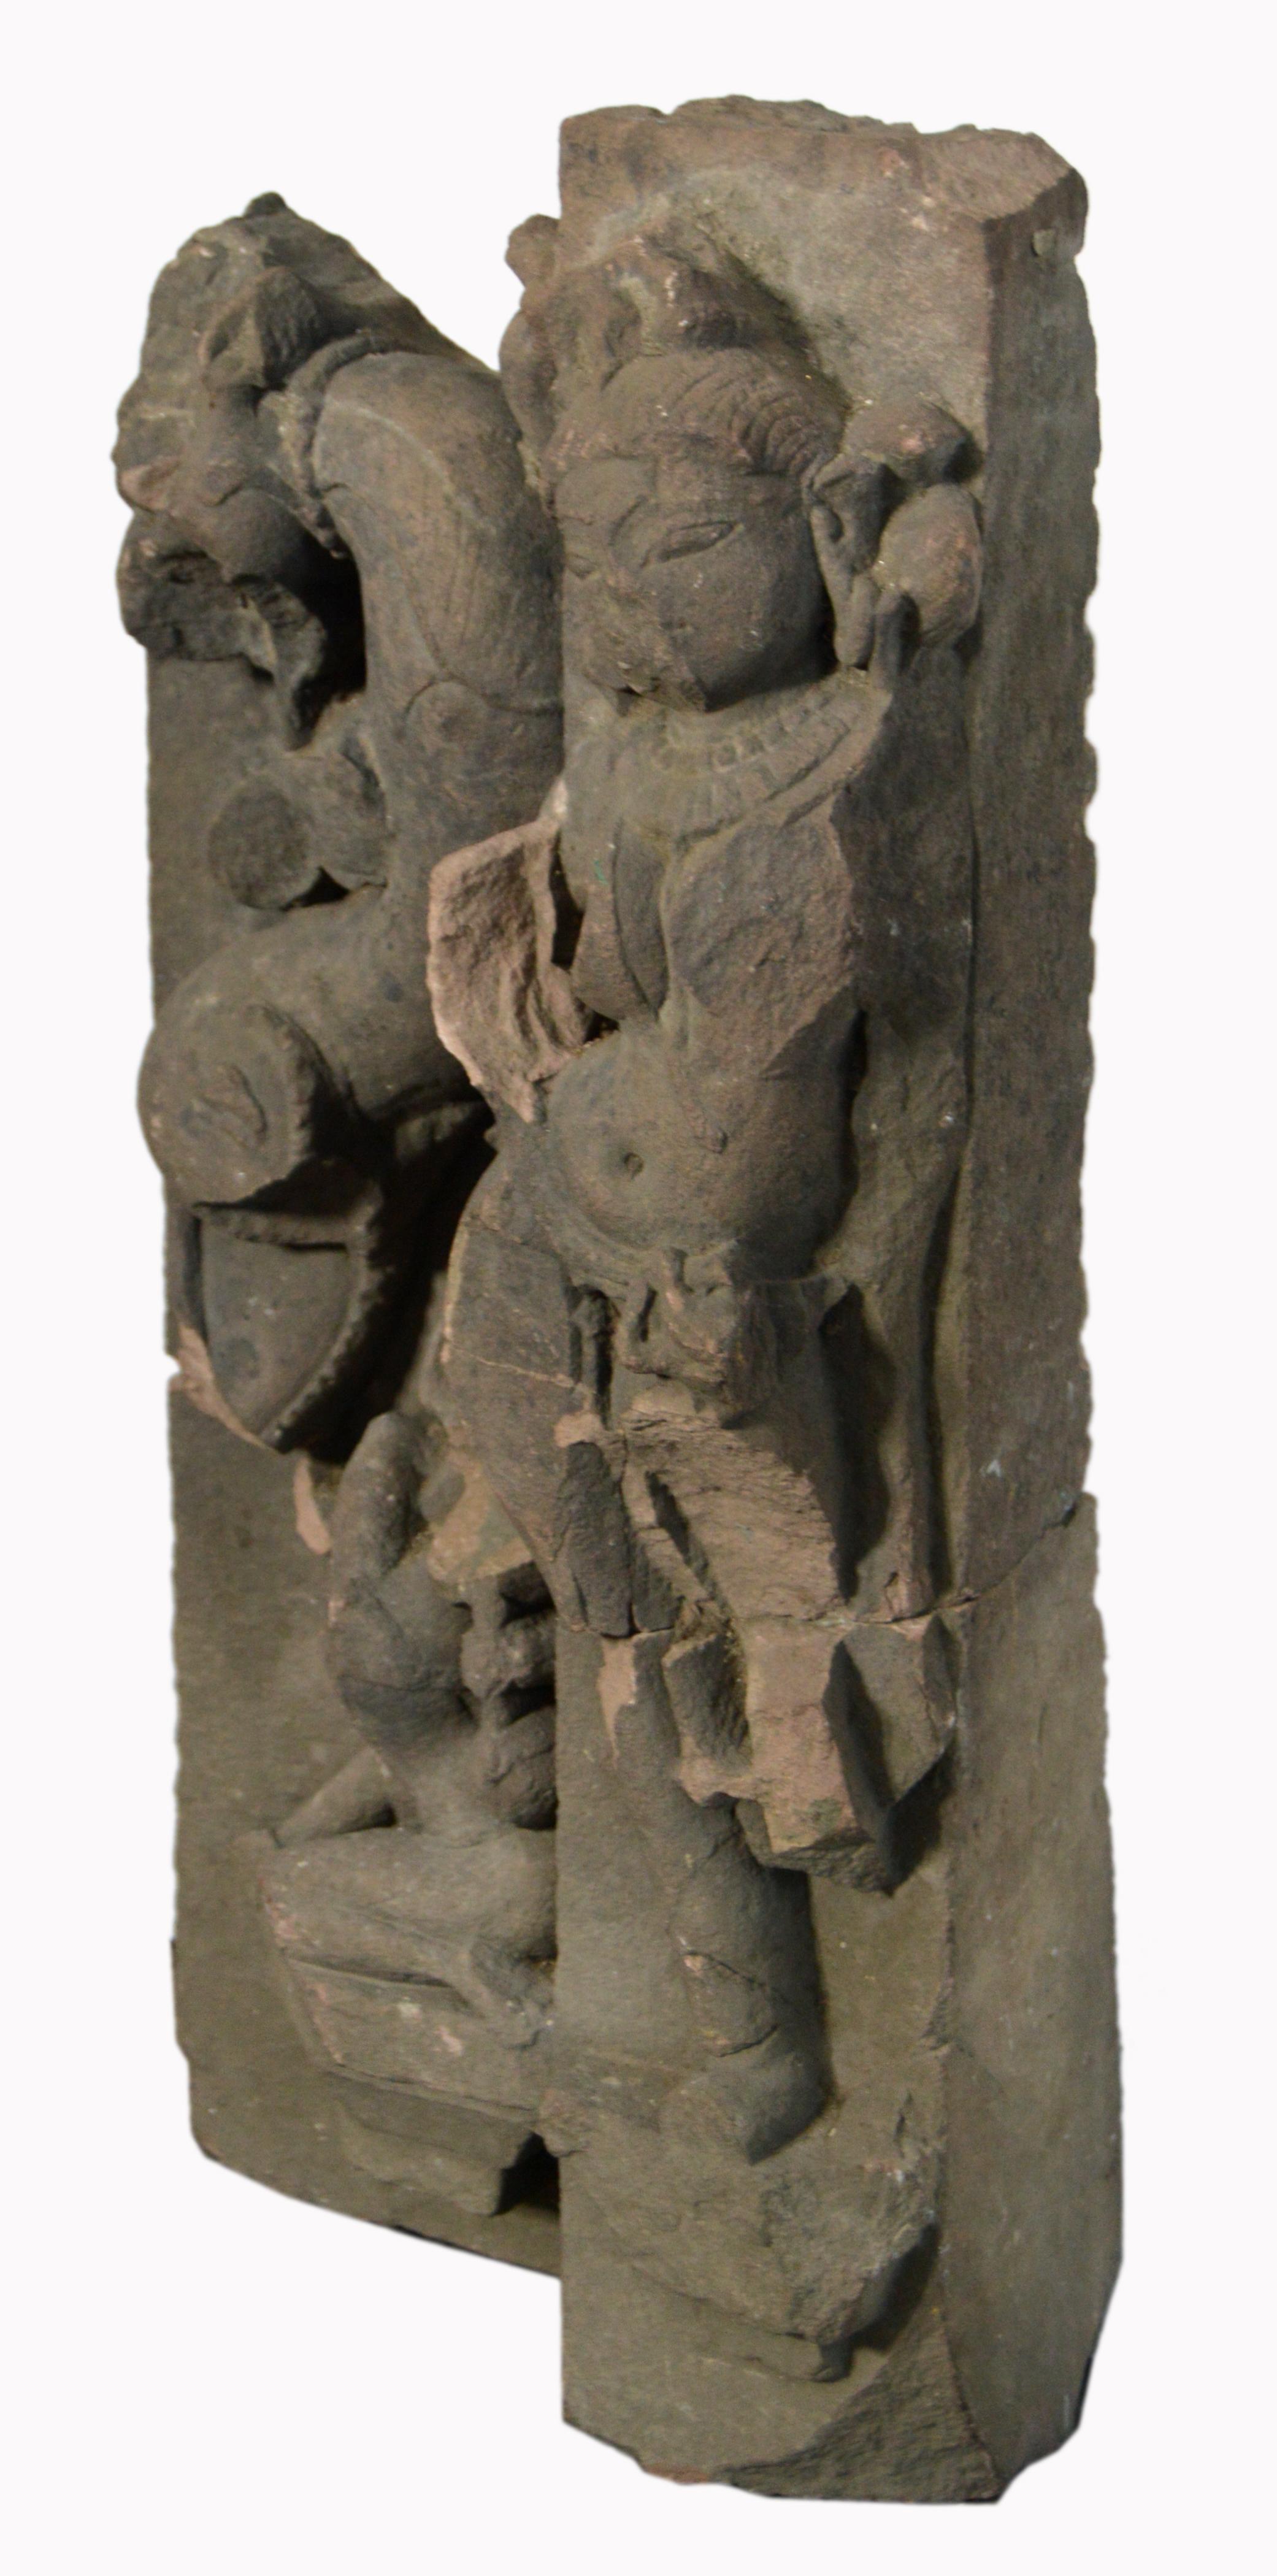 Sculpture de temple en pierre sculptée à la main datant du XVIIe siècle en Asie, probablement en Inde, représentant une divinité. Dotée d'une forte patine révélant son âge, cette sculpture en pierre sculptée à la main en haut-relief ornait les murs